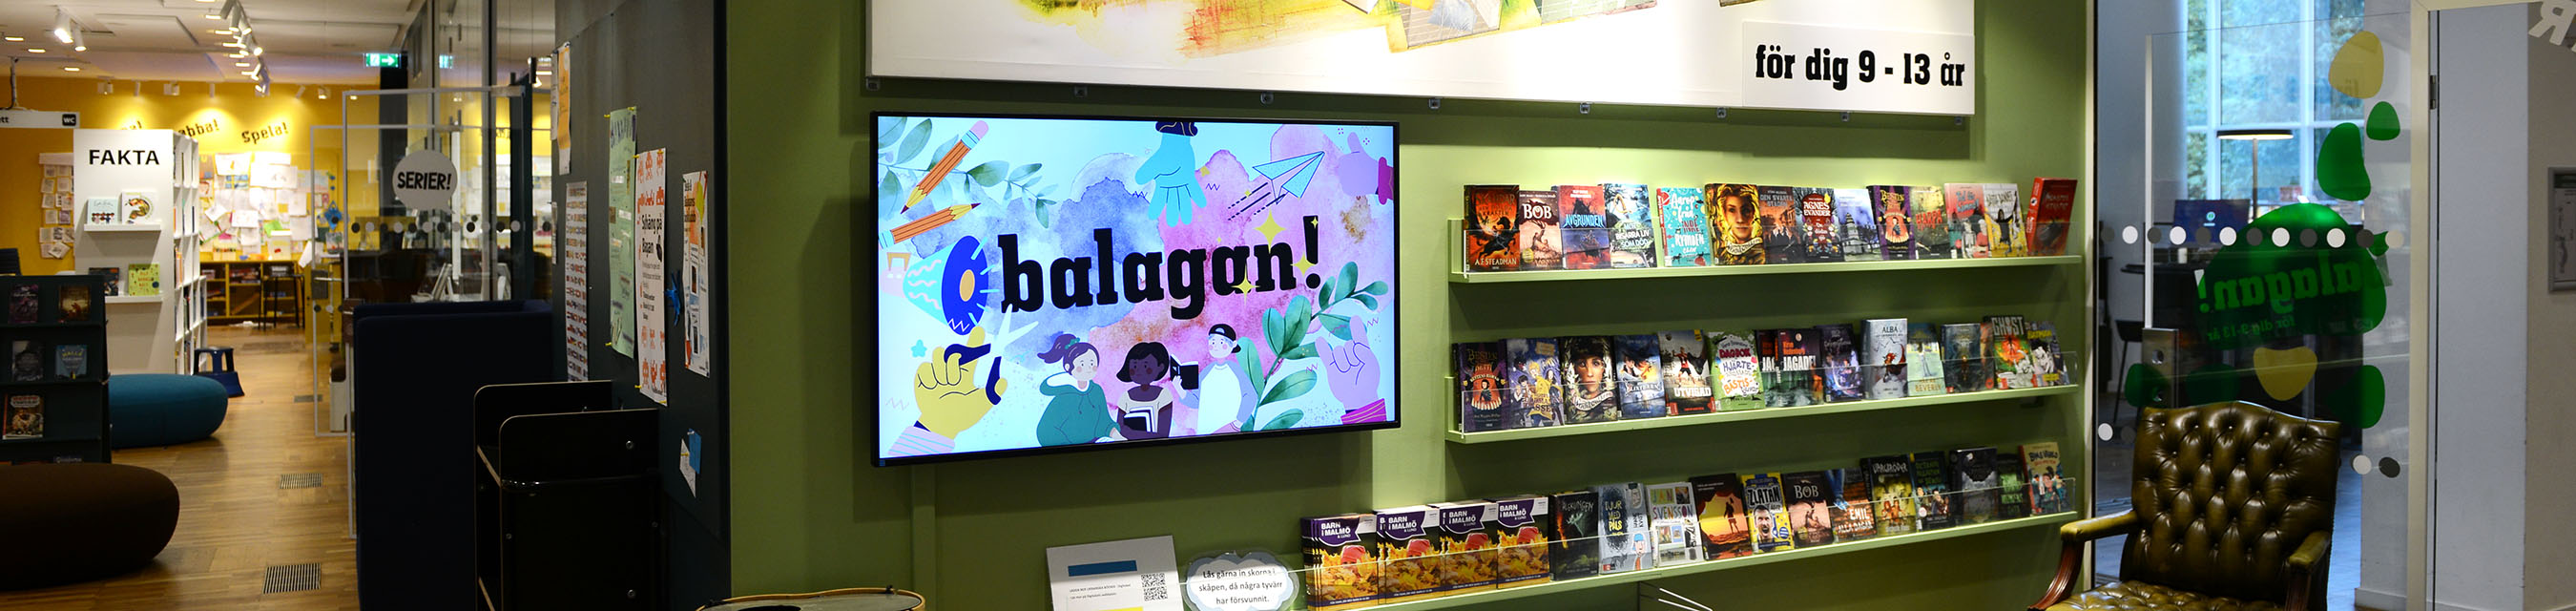 På Balagan kan du låna, läsa, skapa, spela, umgås och hänga.